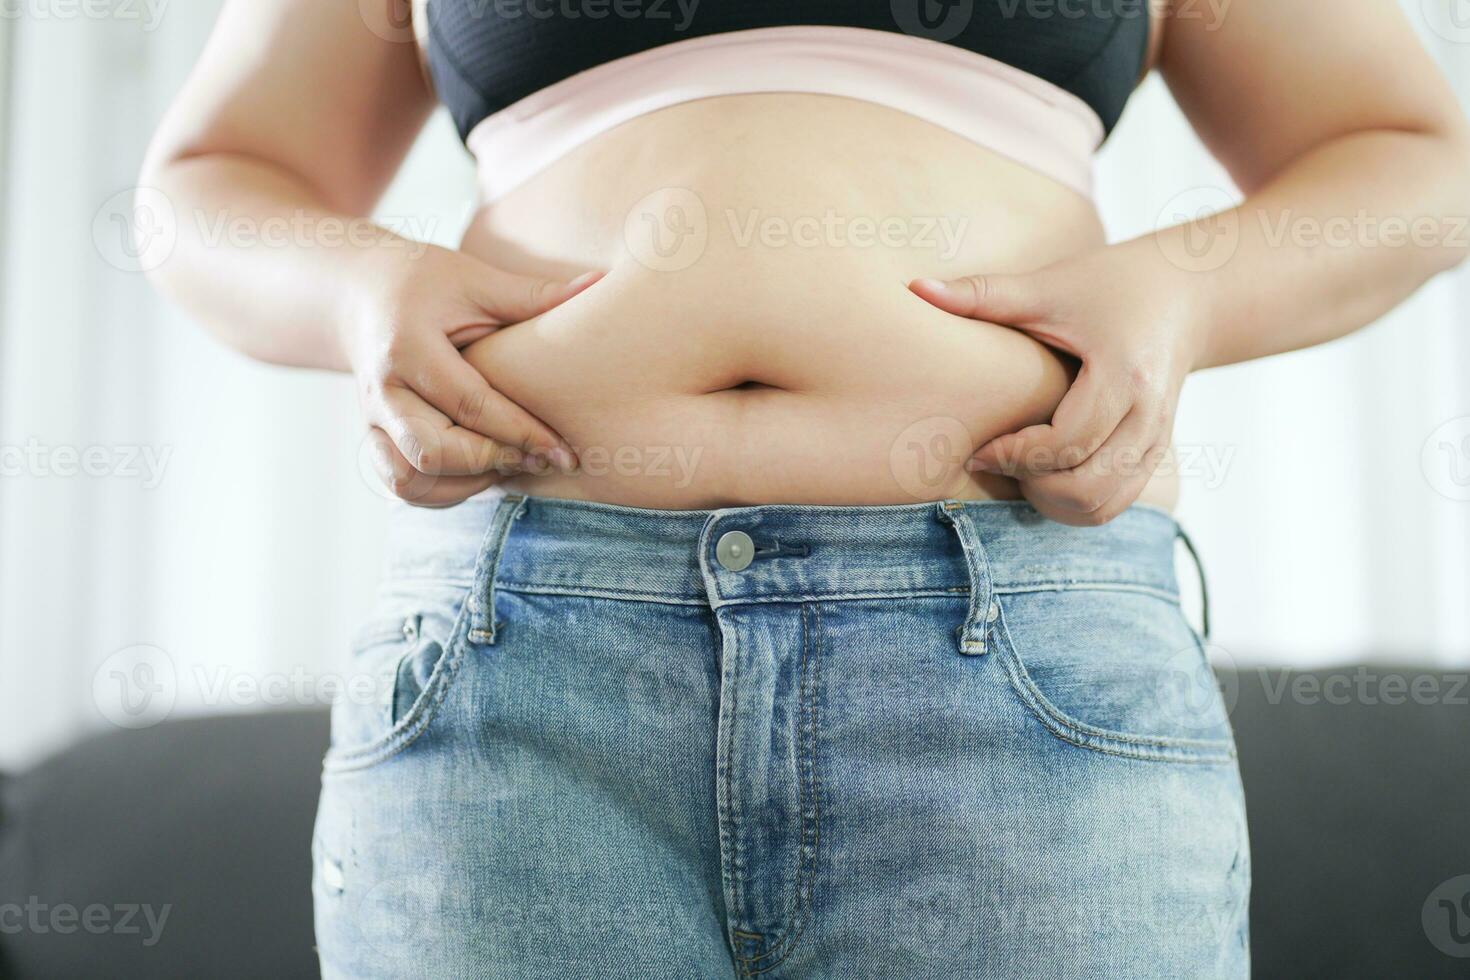 obèse femme avec graisse dérangé à propos sa ventre. en surpoids femme émouvant le sien graisse ventre et vouloir à perdre lester. graisse femme avec serré Vêtements inquiet à propos poids régime mode de vie concept photo